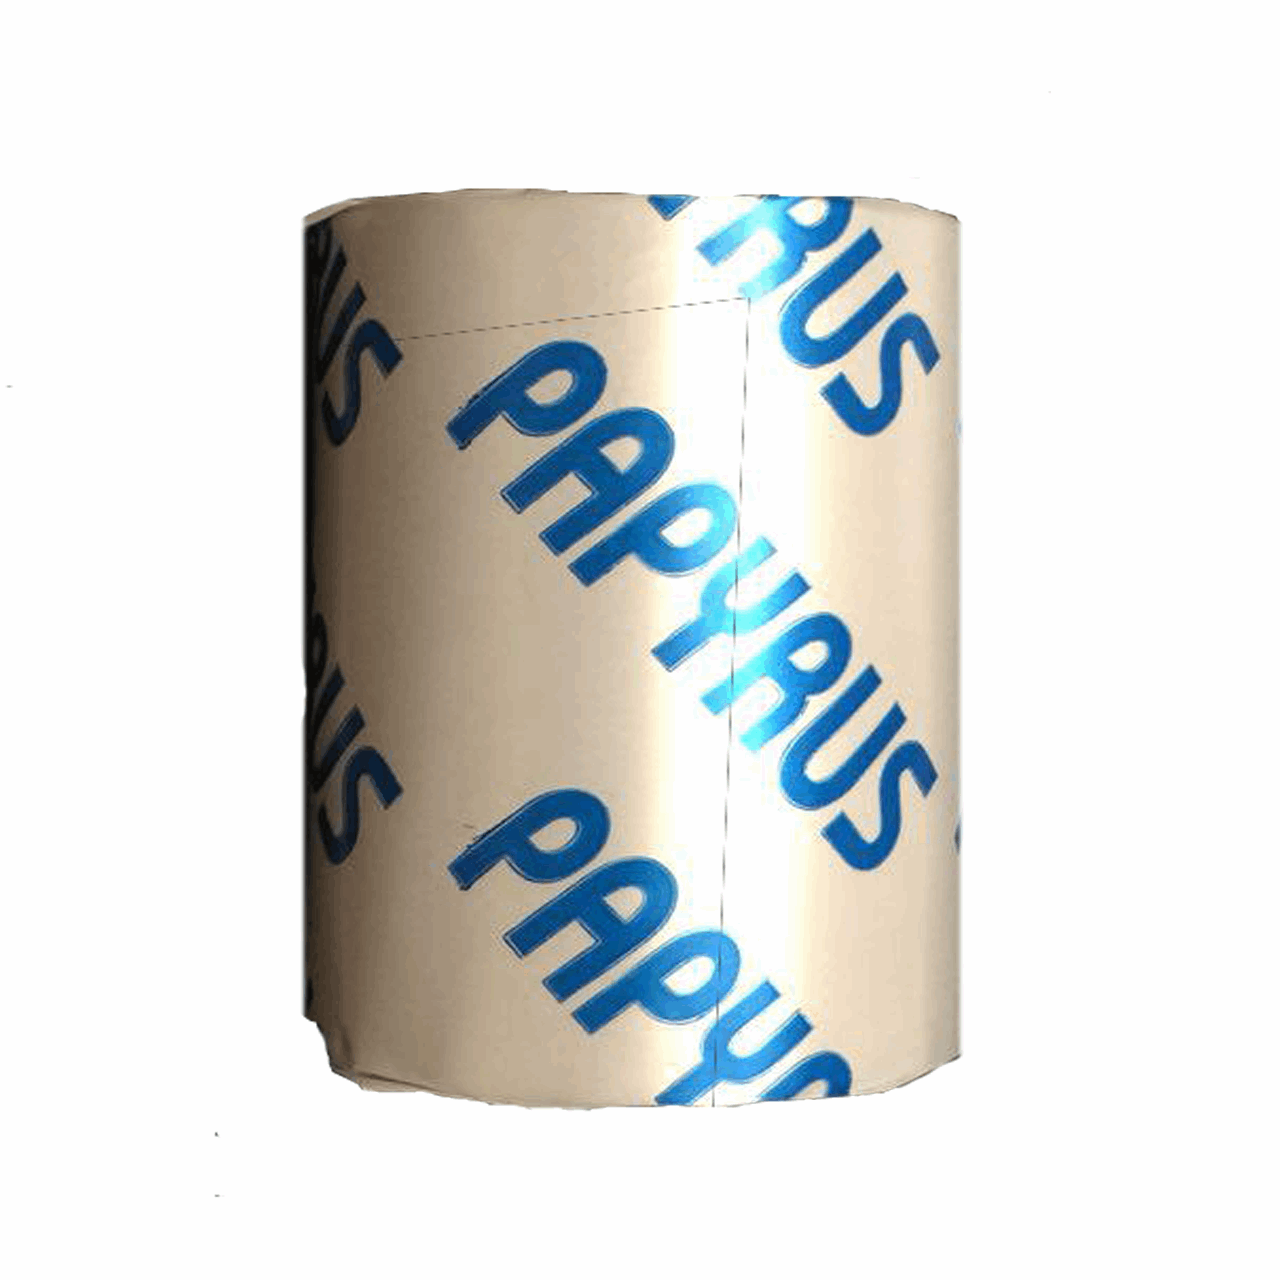 کاغذ مخصوص پرینتر حرارتی پاپیروس مدل 80mm بسته 2 عددی